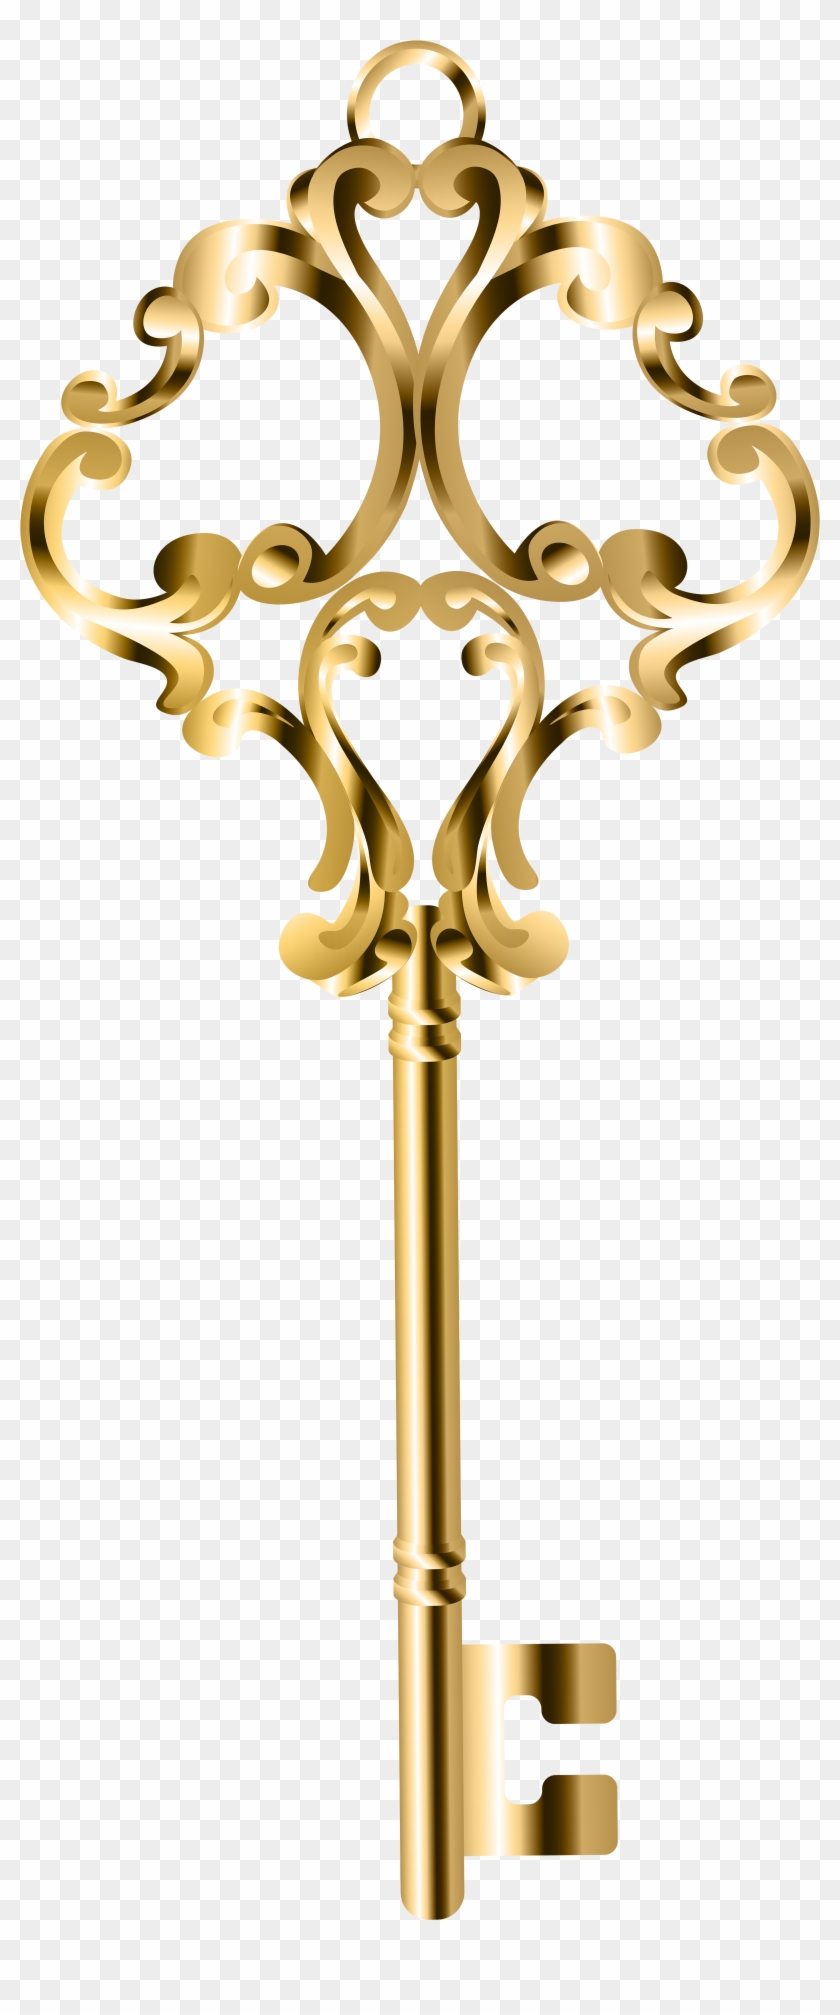 Nghệ thuật Clip chìa khóa vàng PNG cực kỳ độc đáo và đẹp mắt. Biểu tượng của sự mở cửa, cơ hội và may mắn, chìa khóa vàng trở thành một hình tượng được nhiều người ưa chuộng. Hãy tải xuống clip chìa khóa vàng PNG và gây ấn tượng mạnh mẽ.